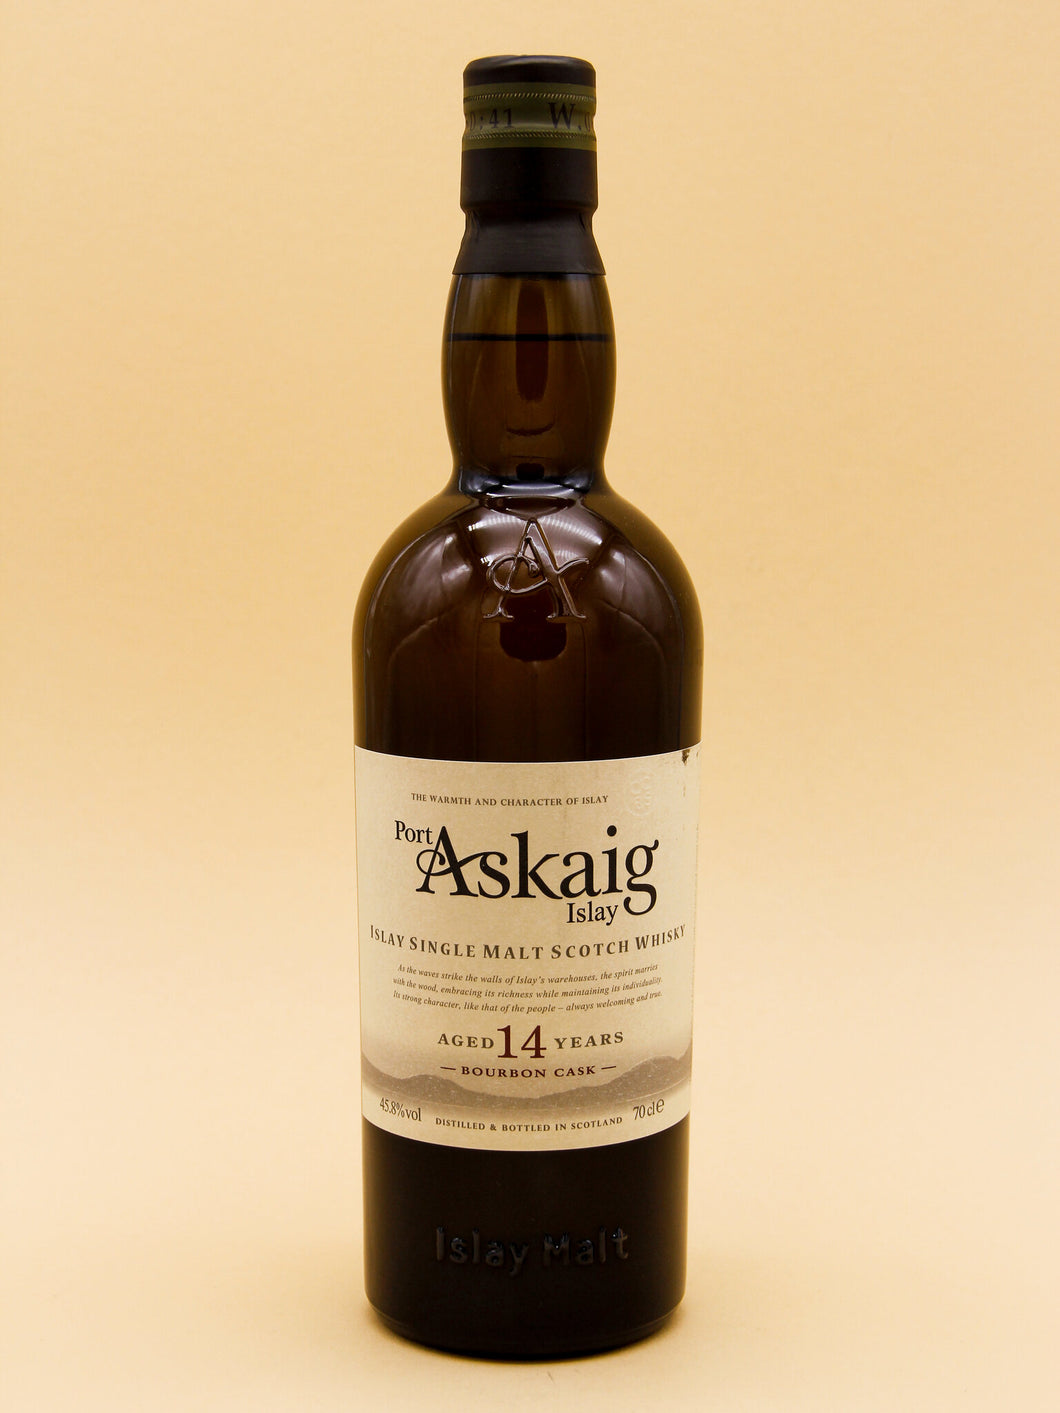 Port Askaig Aged 14 Years, Bourbon Cask, Islay Single Malt Scotch Whisky (45.8%, 70cl)